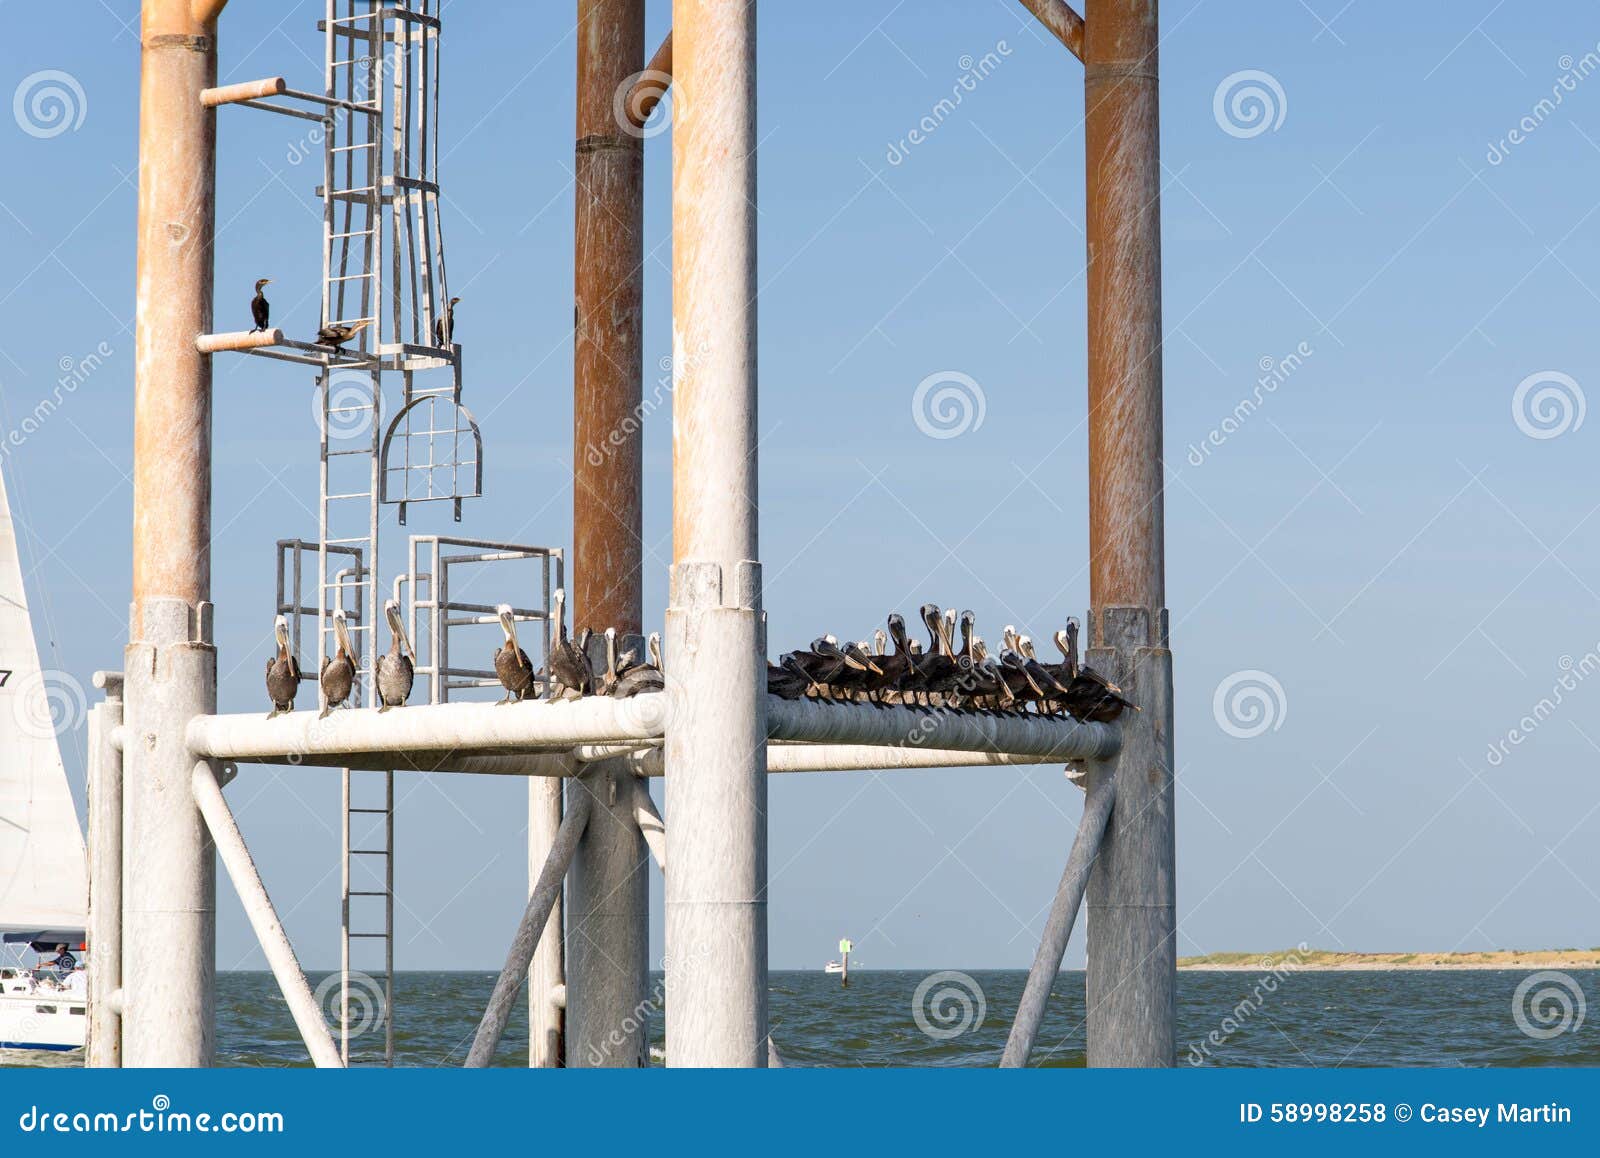 Pelikane, die auf einer Struktur im Ozean stillstehen. Pelikane, die auf einem Metallbau im Ozean stillstehen